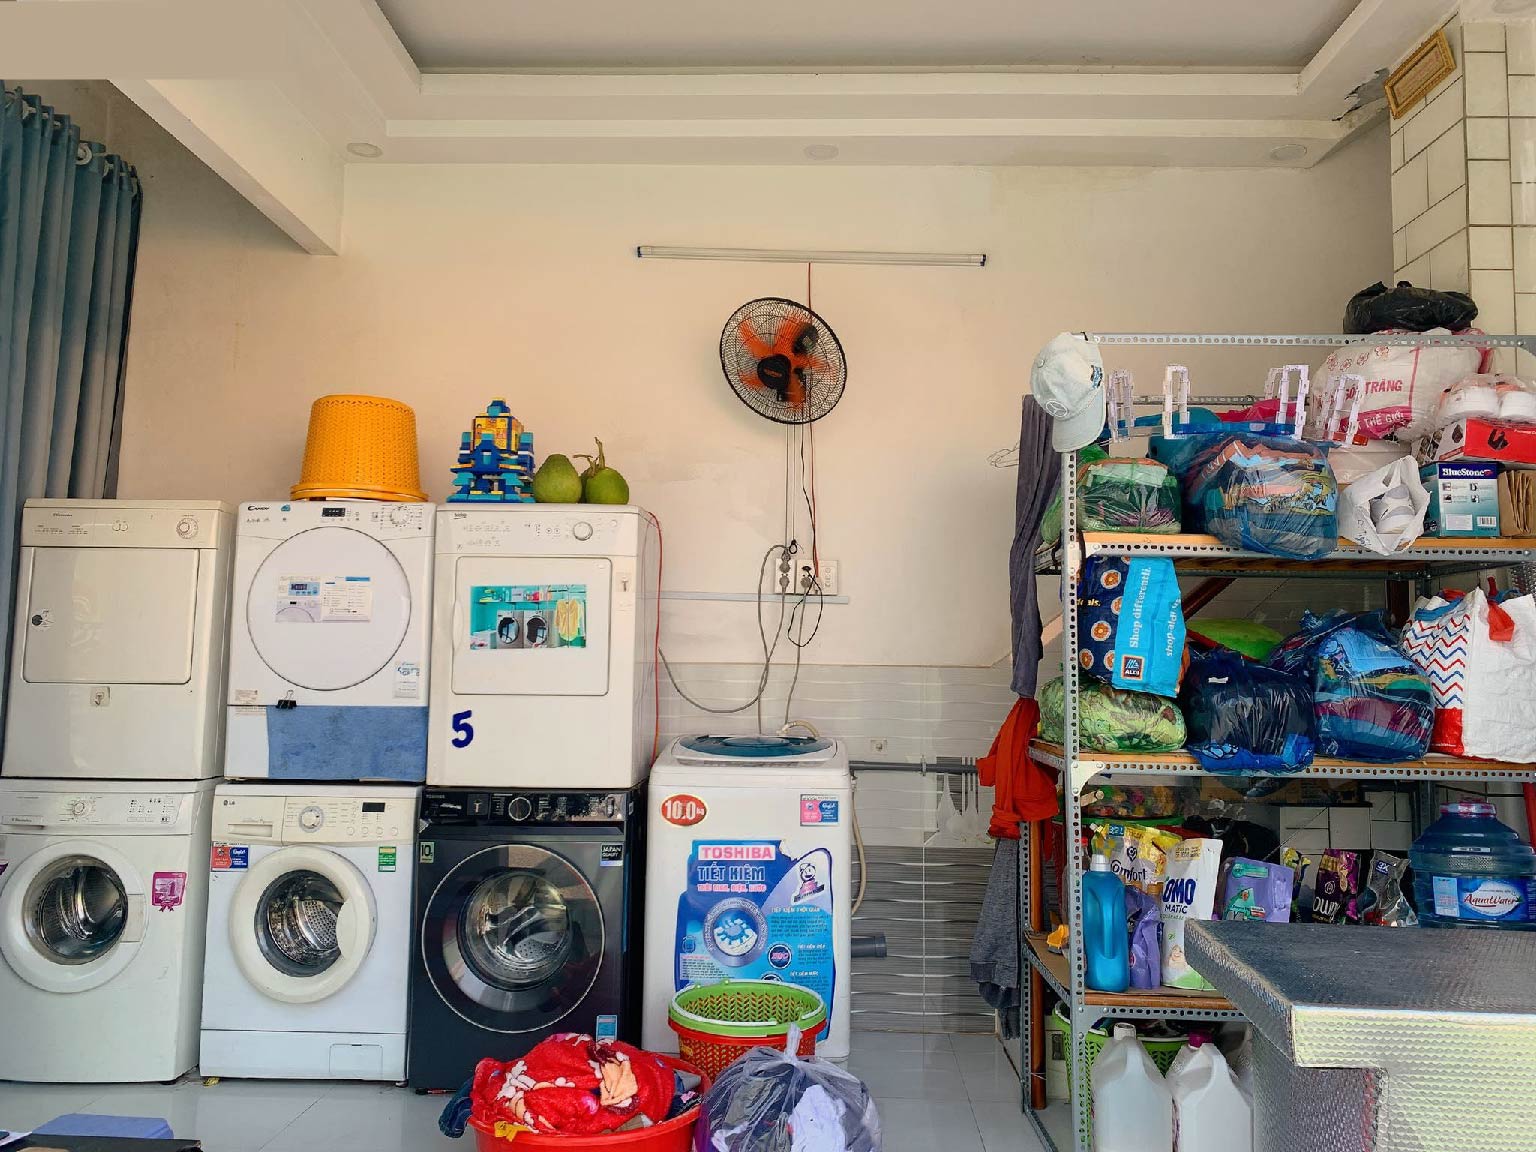 Tiệm giặt ủi quận 2 chất lượng – Tiệm giặt ủi sài gòn uy tín